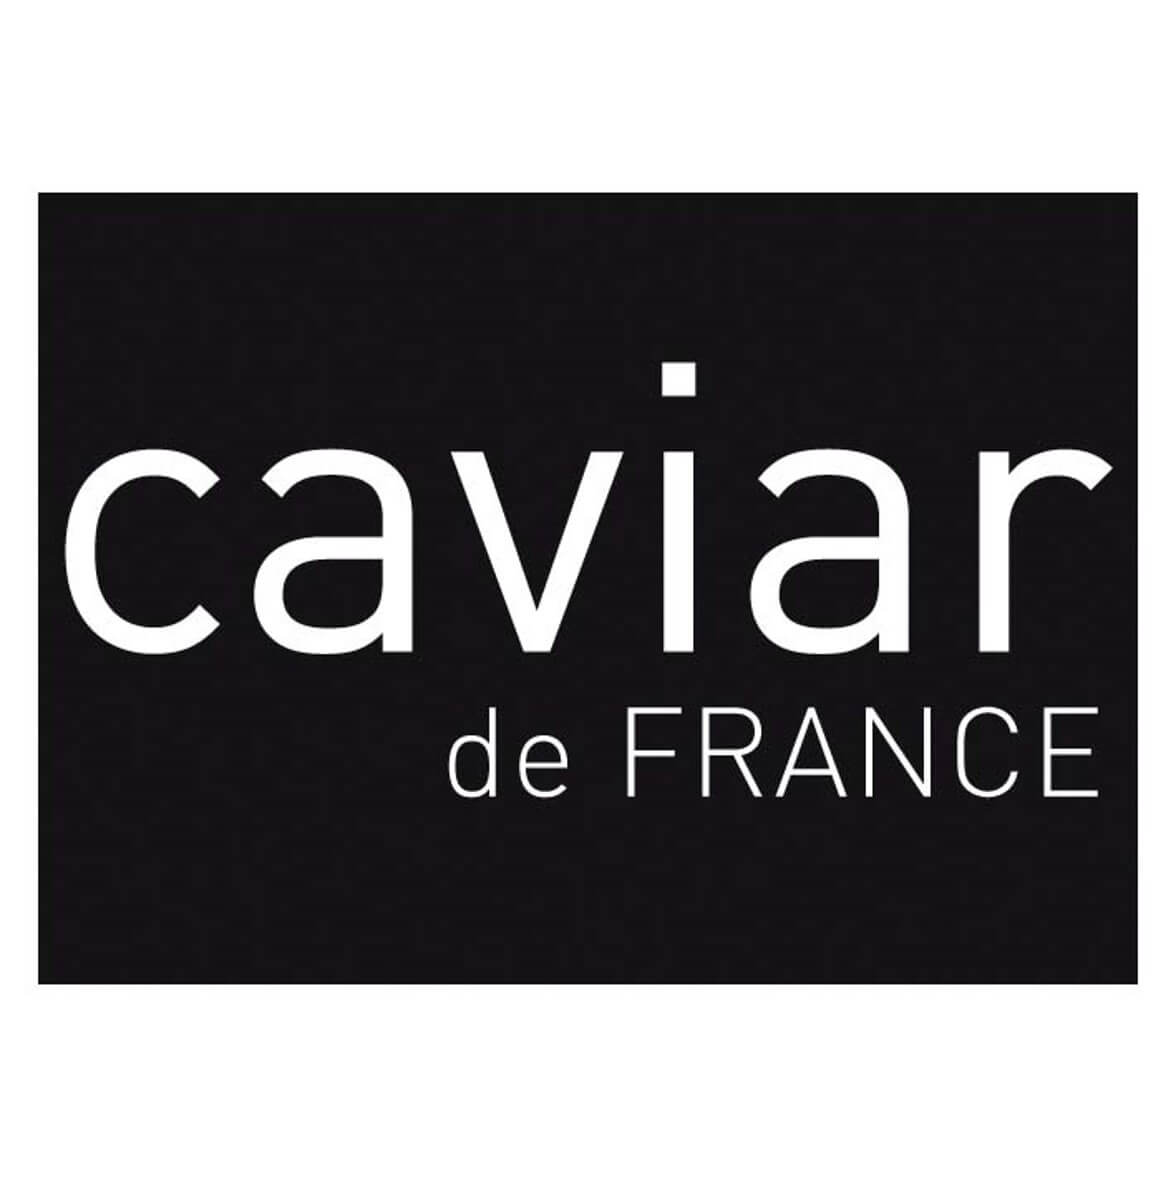 Caviar de France logo